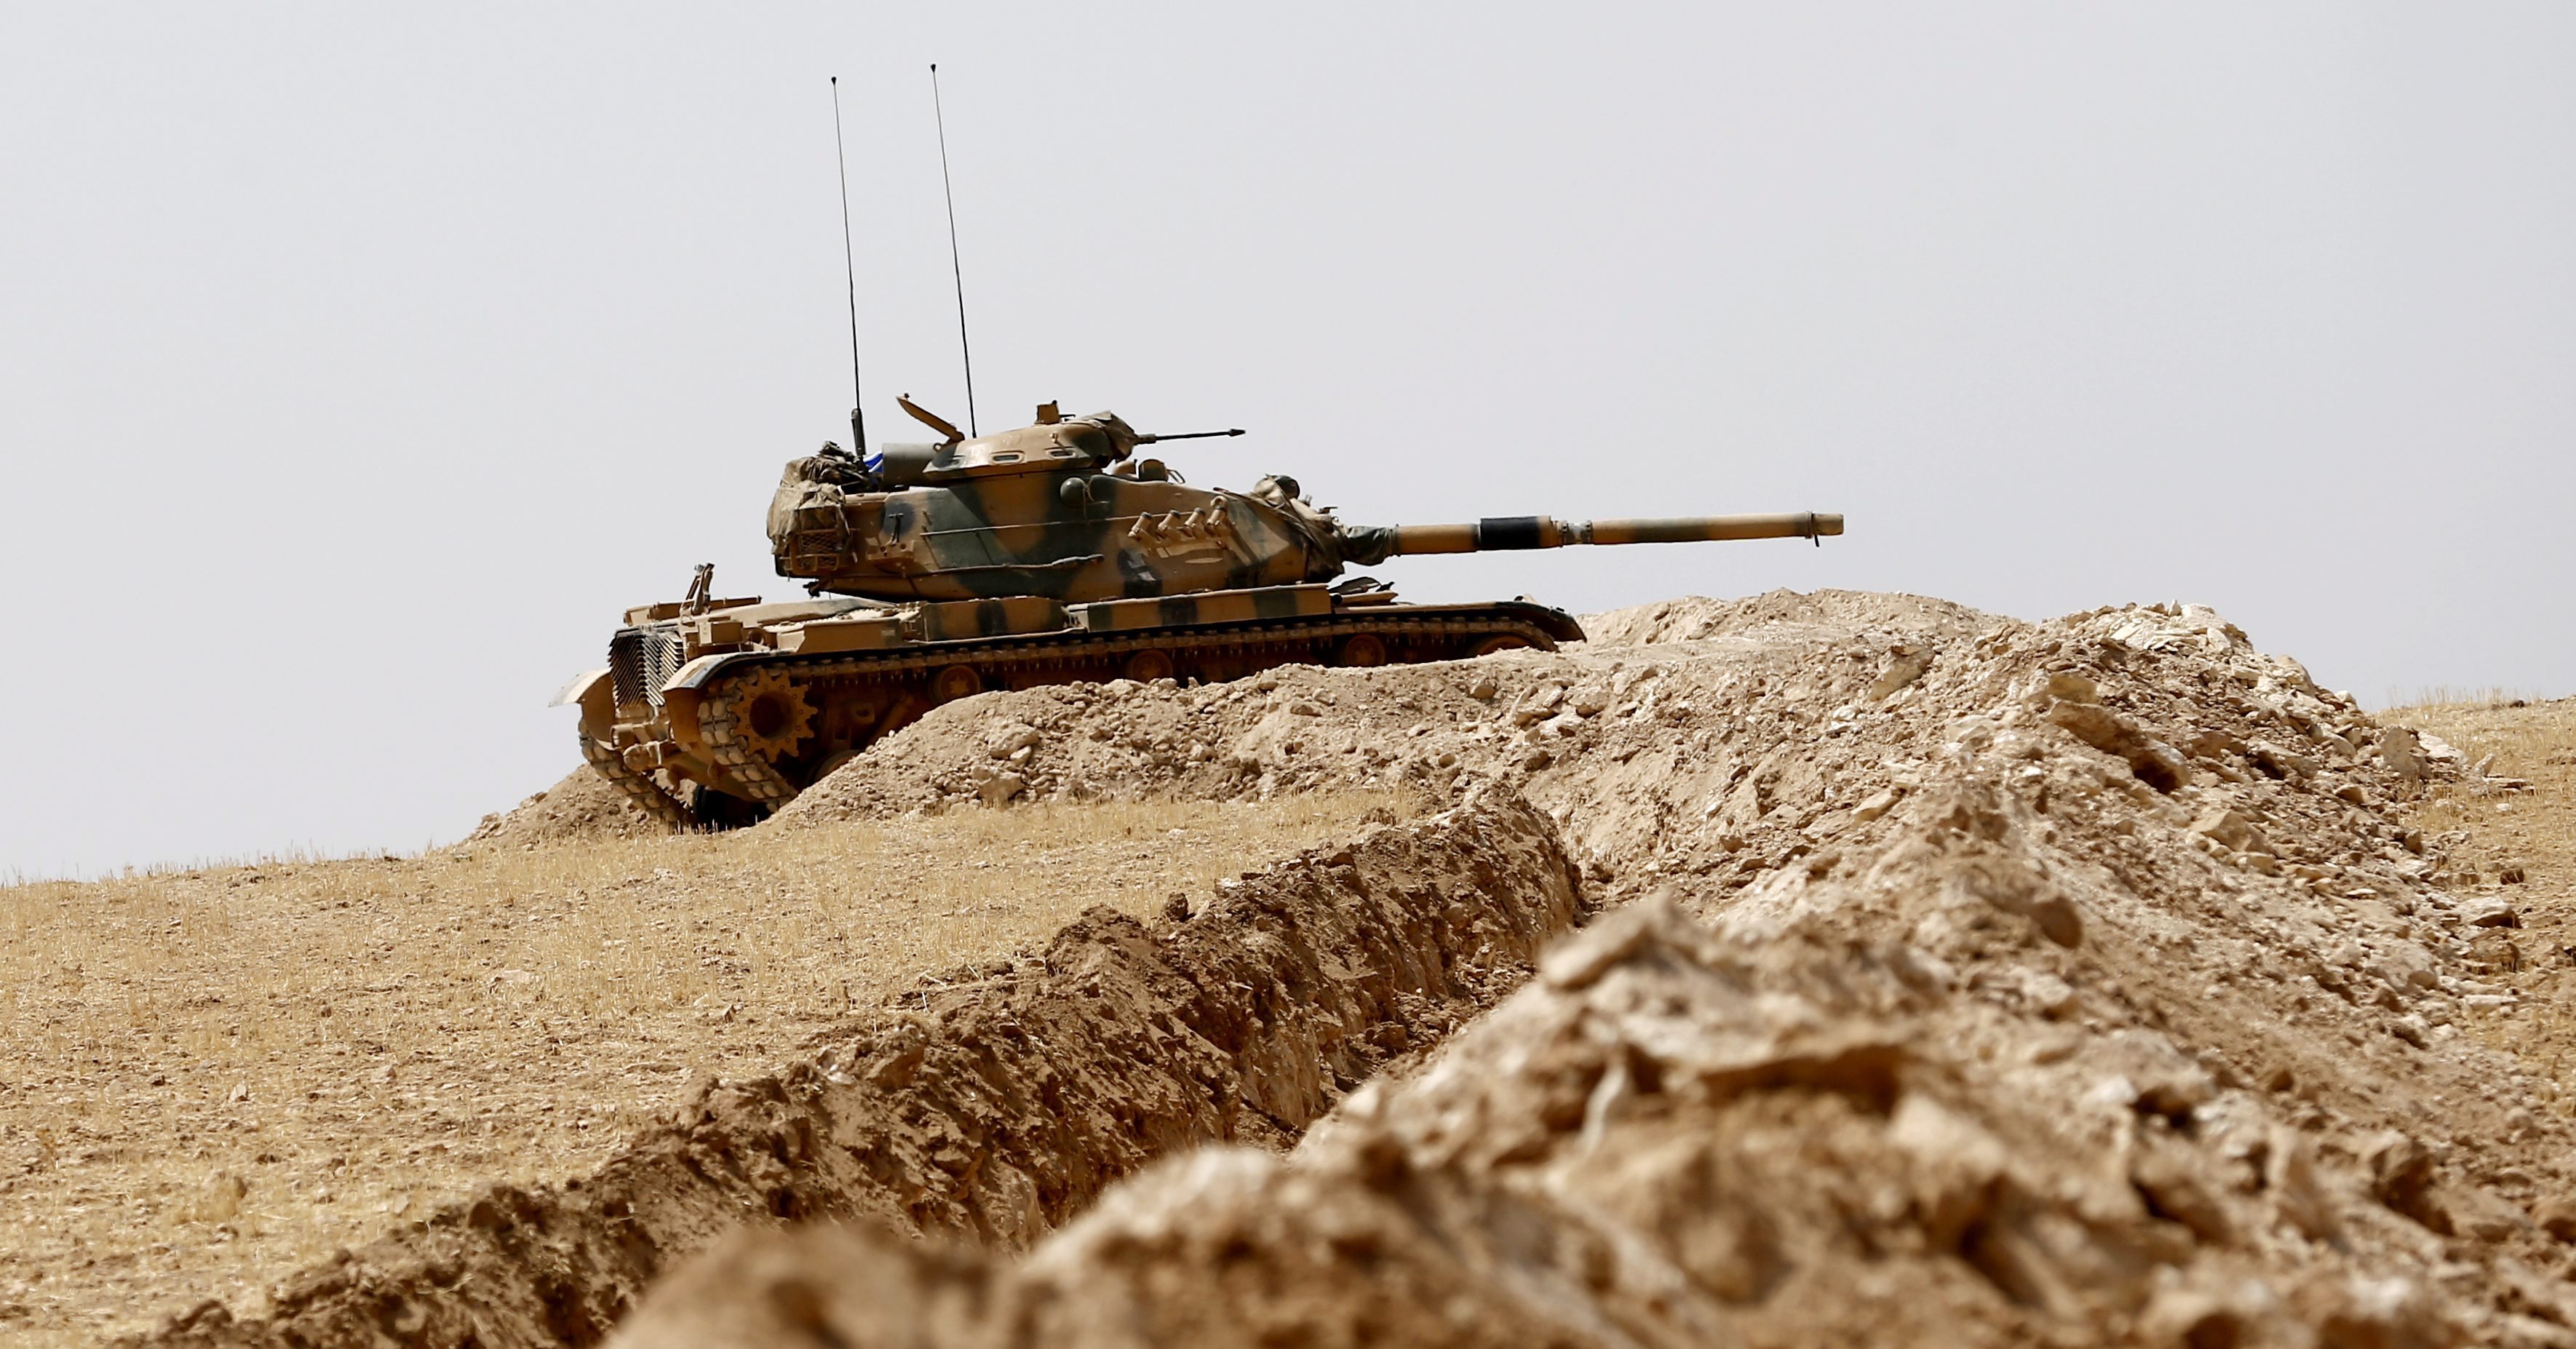 Τουρκικό άρμα μάχης επλήγη στη βόρεια Συρία, τραυματίες τρεις στρατιώτες